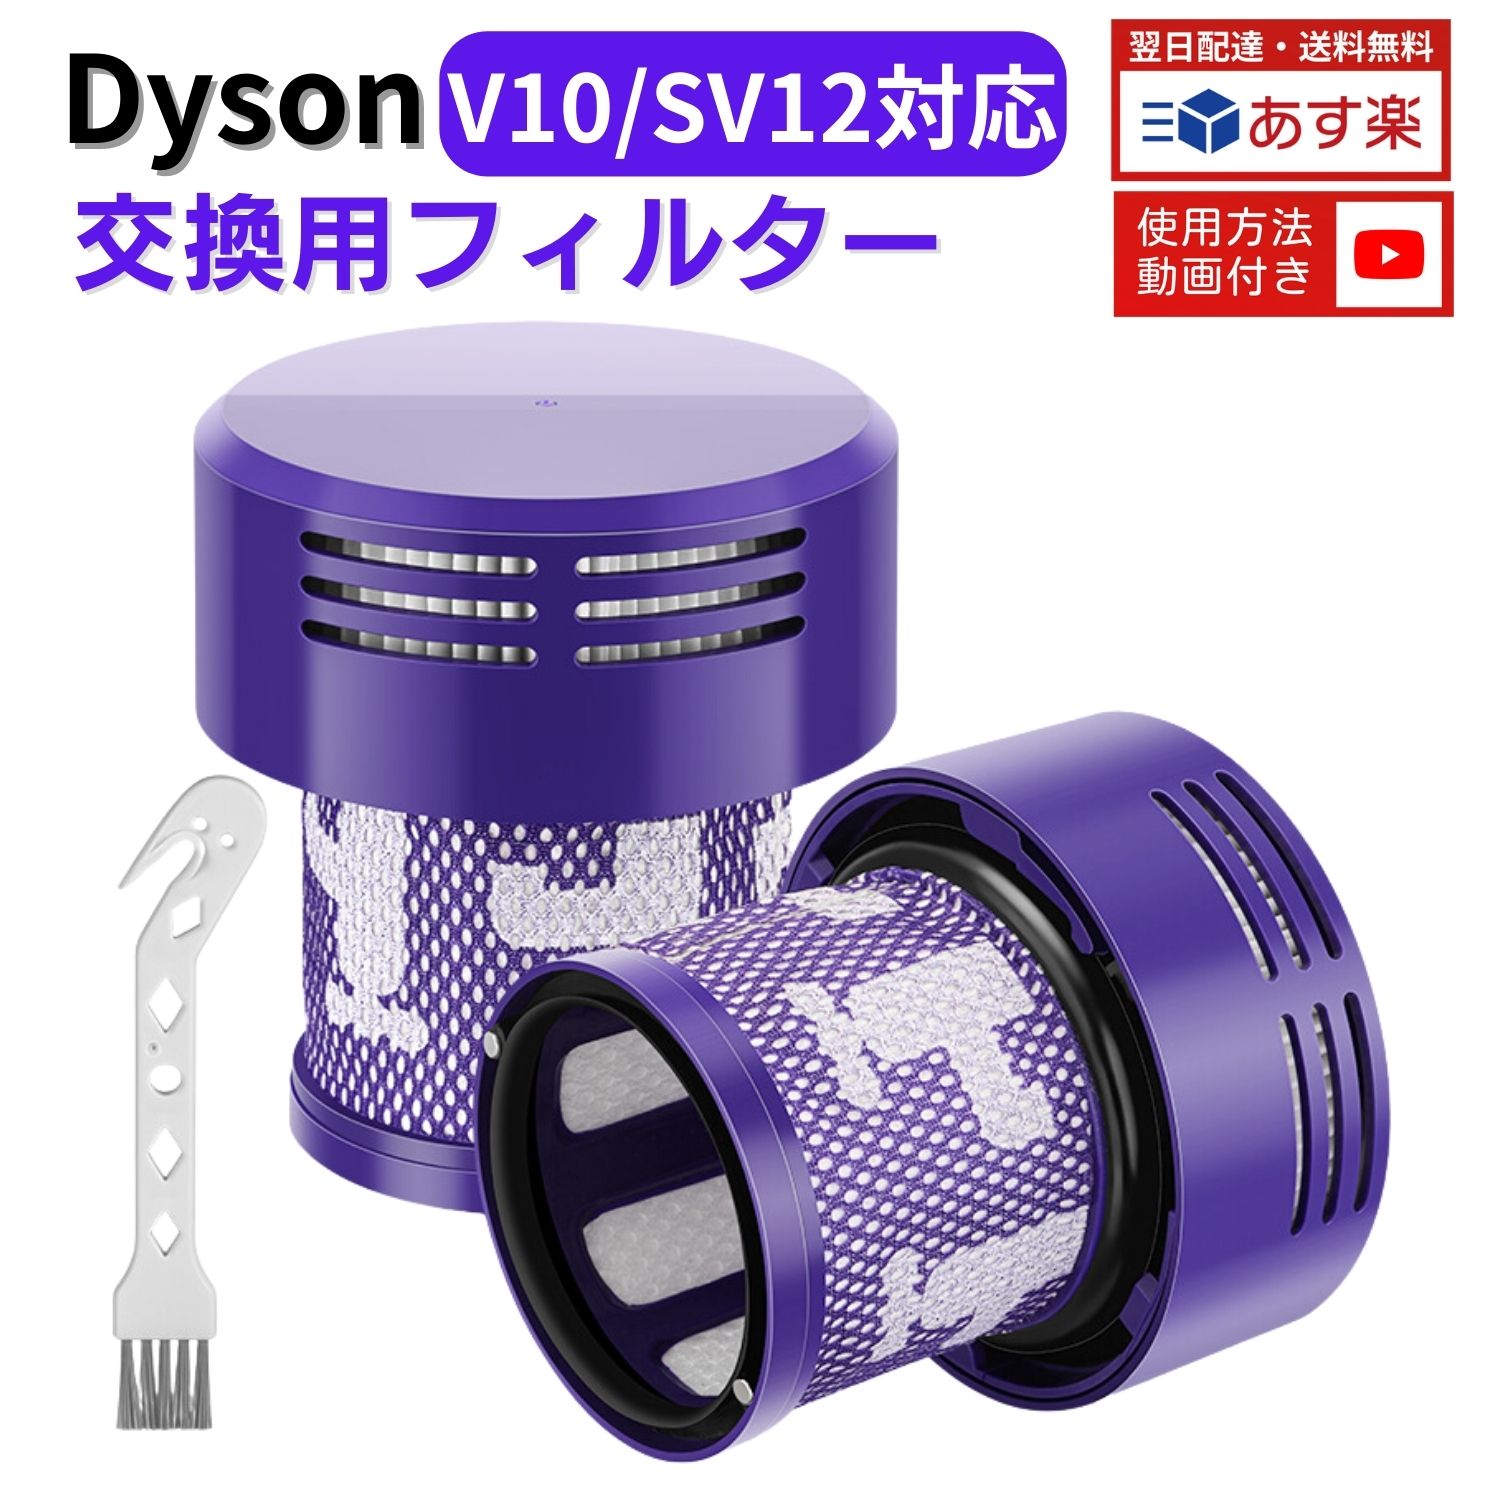 【期間限定ポイント5倍】 ダイソン 掃除機 フィルター V10 SV12 dyson シリーズ 専用 ダイソンV10 フィルター 水洗い 掃除機 コードレスクリーナー 969082-02 アジア版 2個セット